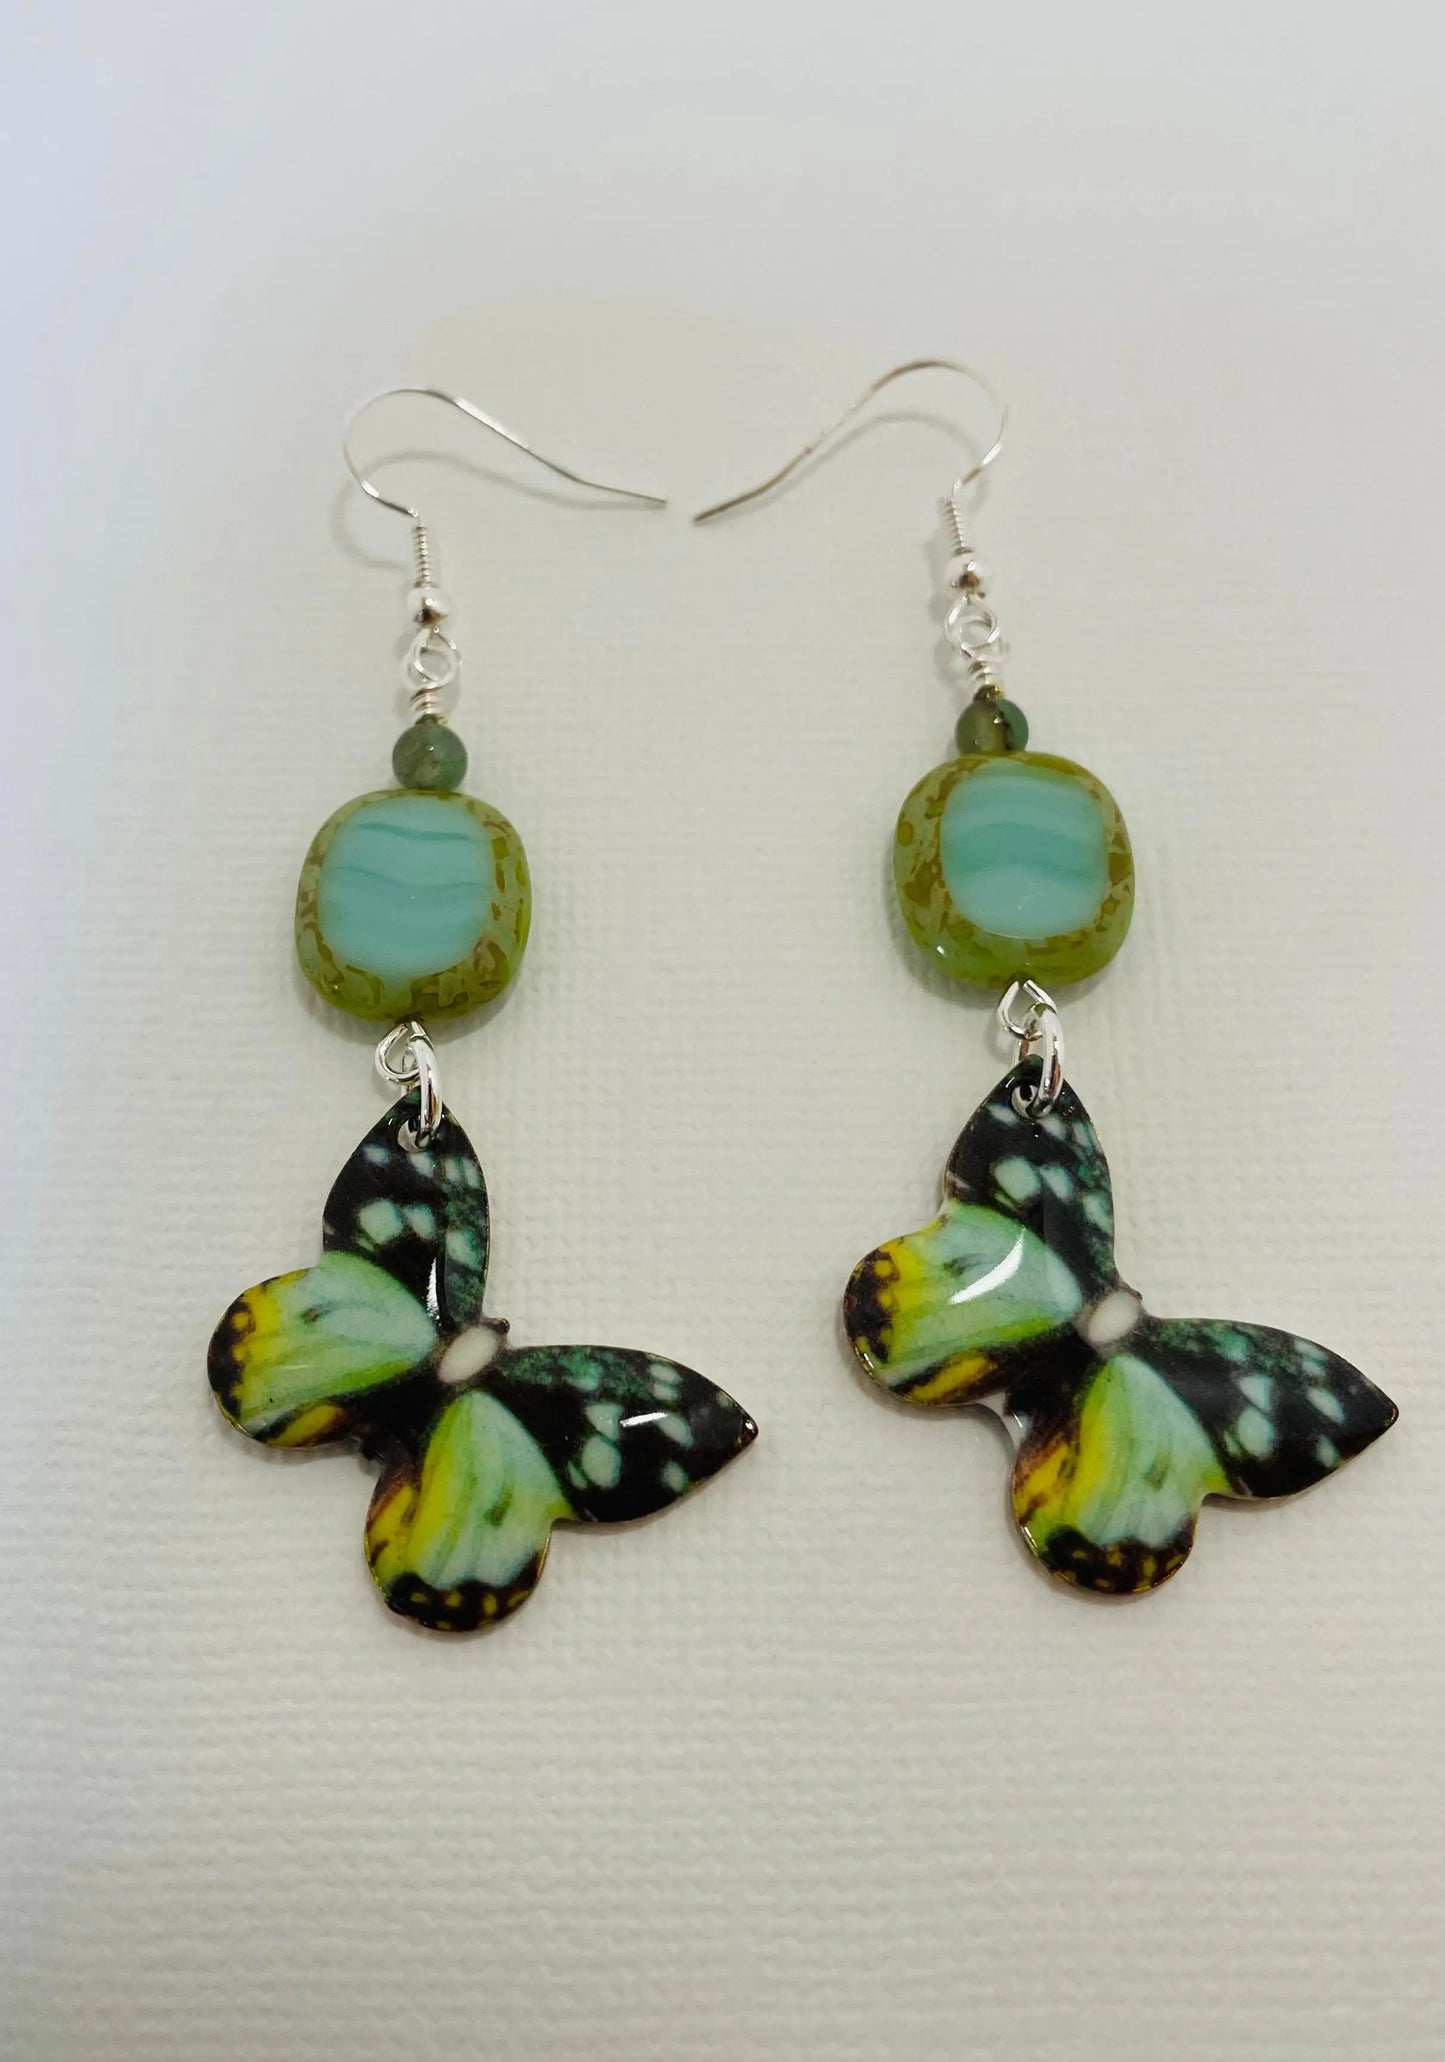 Handcrafted butterflies earrings by Linda - Image #2